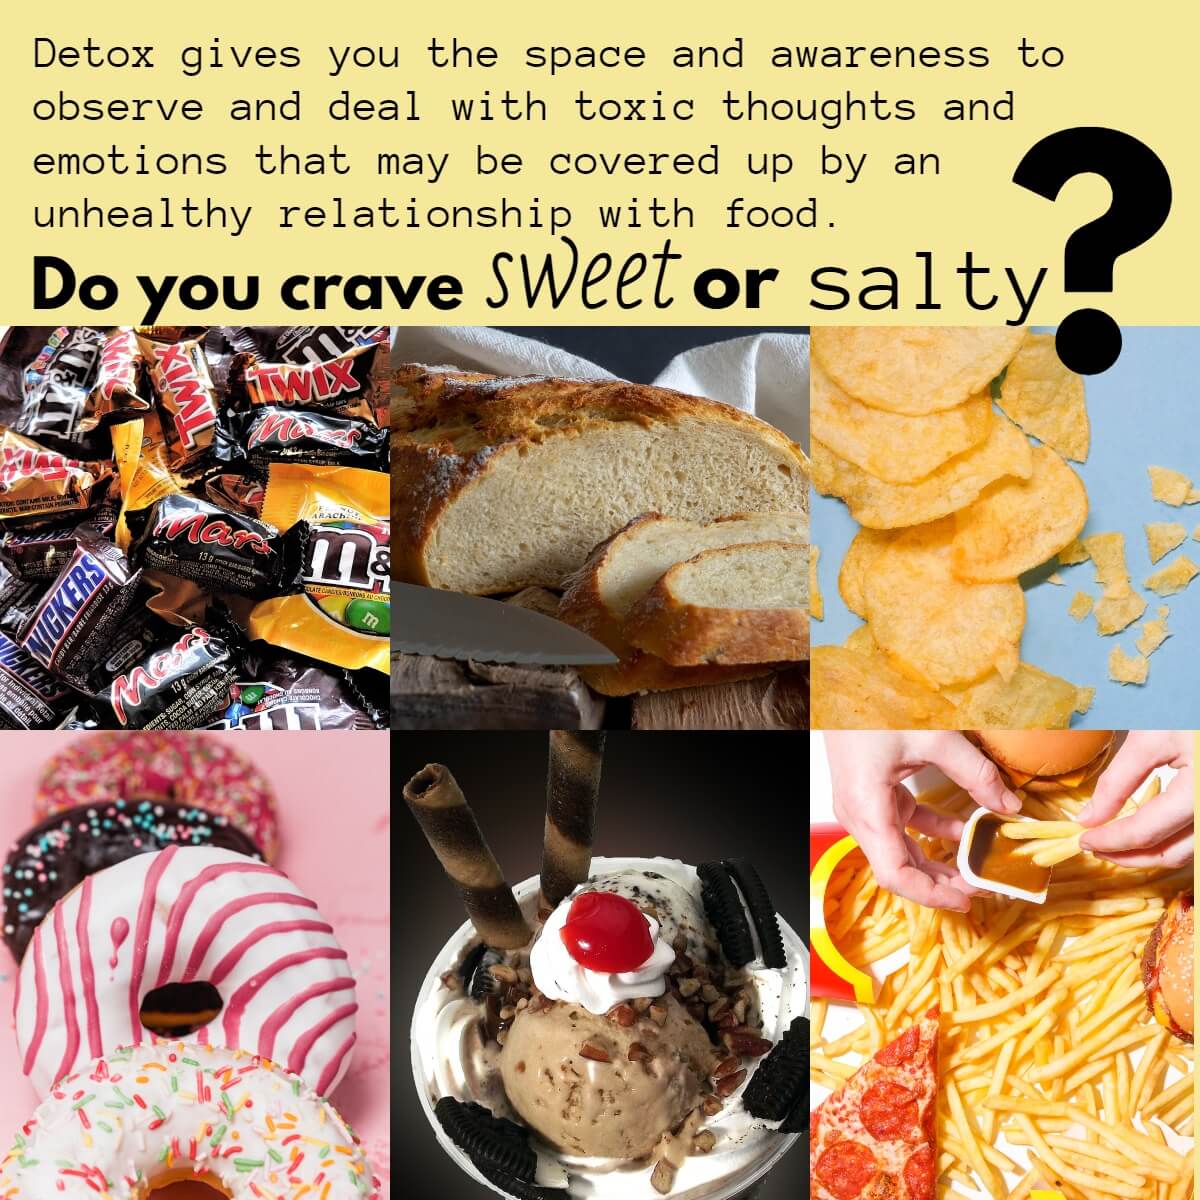 sweet or salty detox helps your food cravings